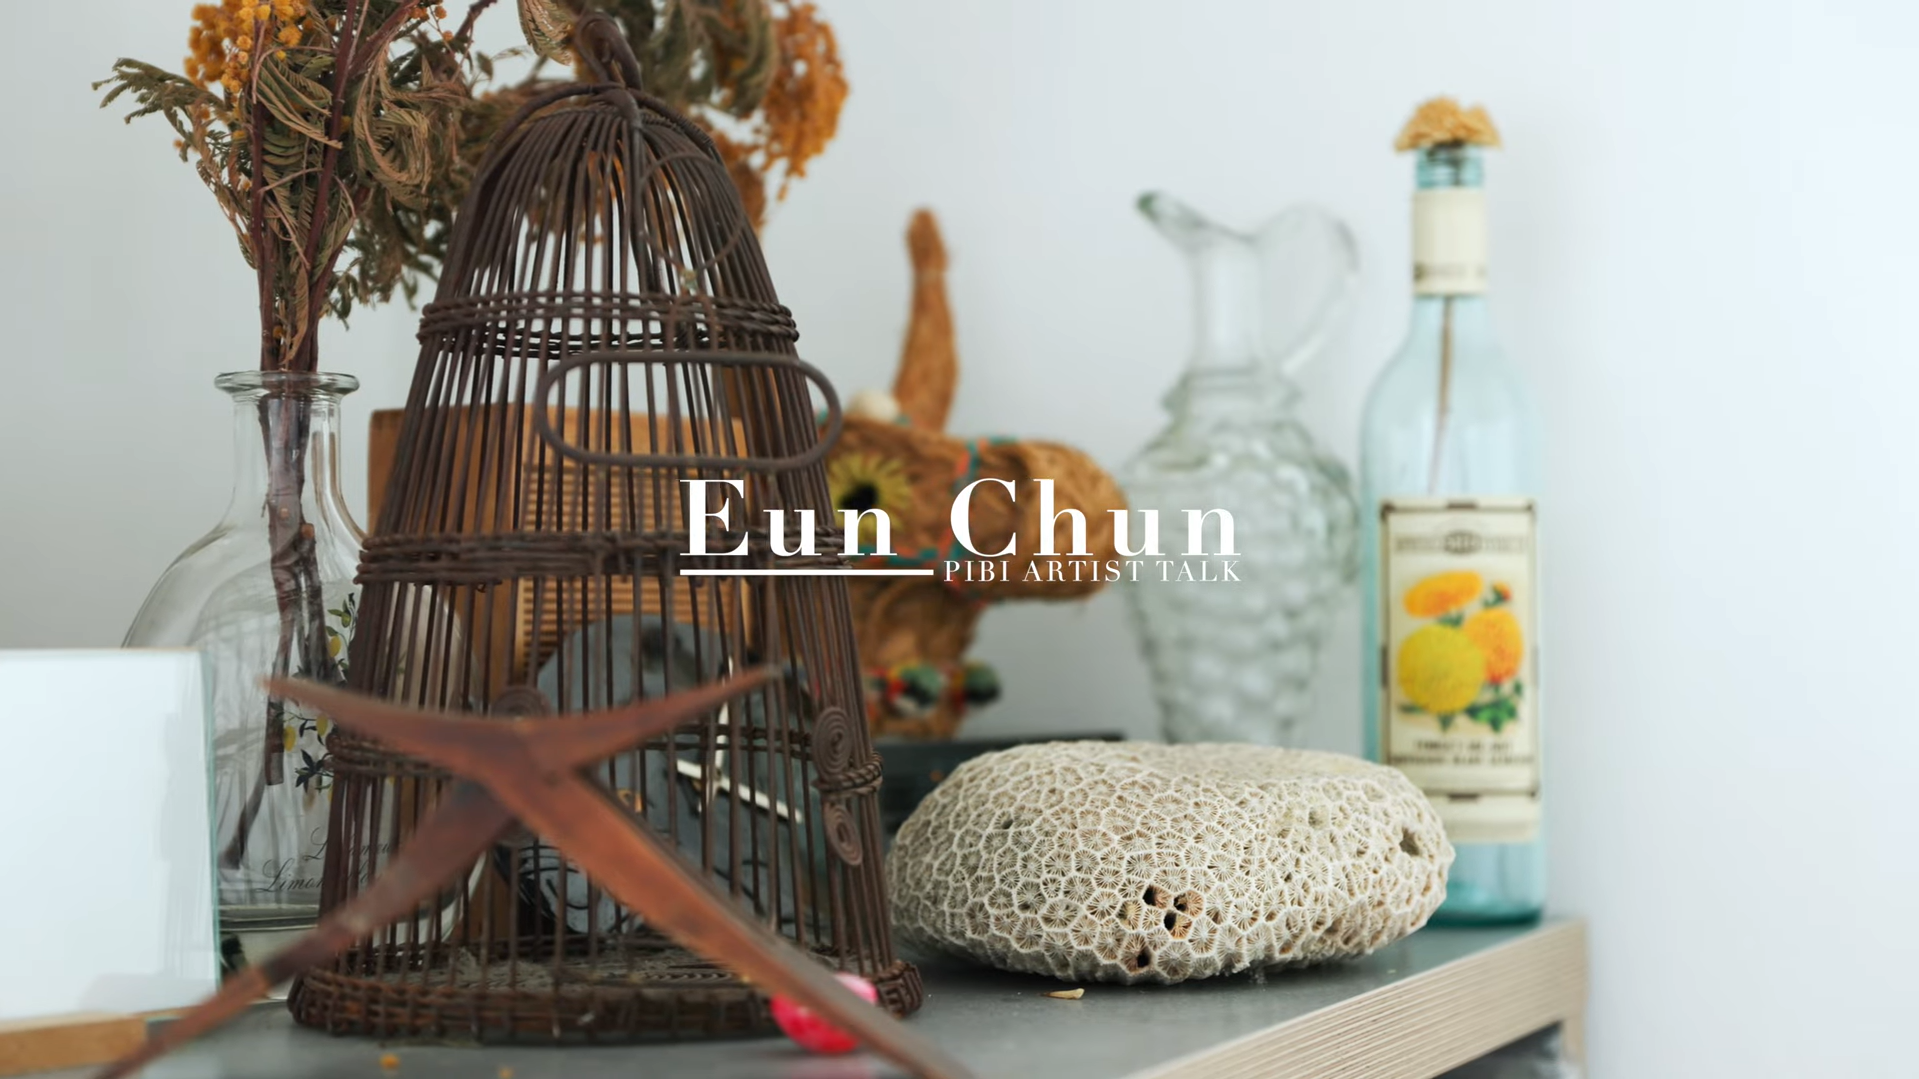 PIBI ARTIST TALK : Eun Chun